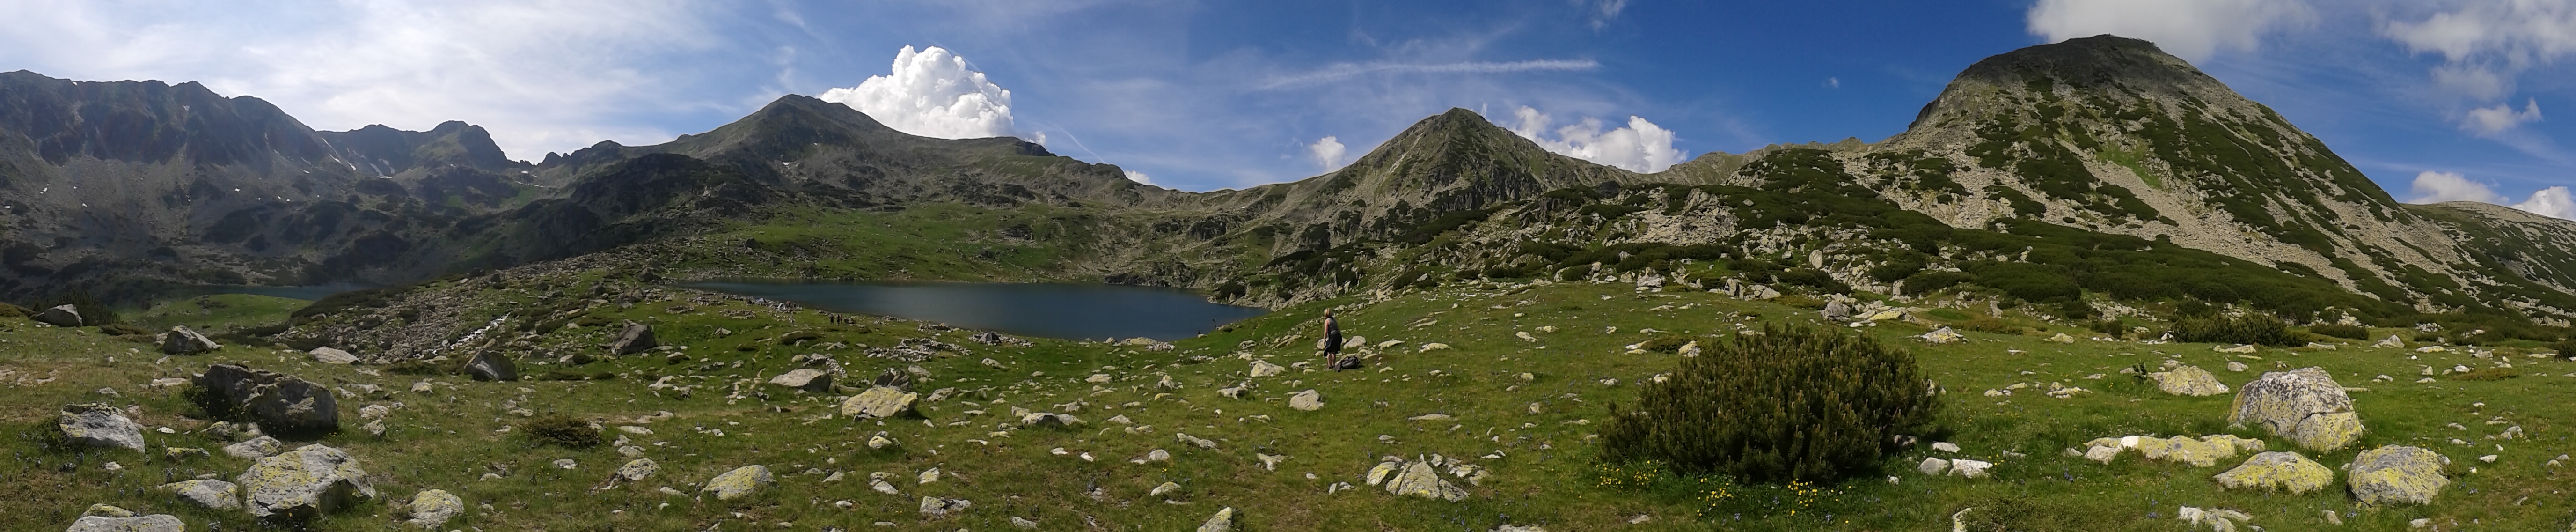 Pe munte: în Munții Retezat – Lacul Bucura (alt. 2040 m)